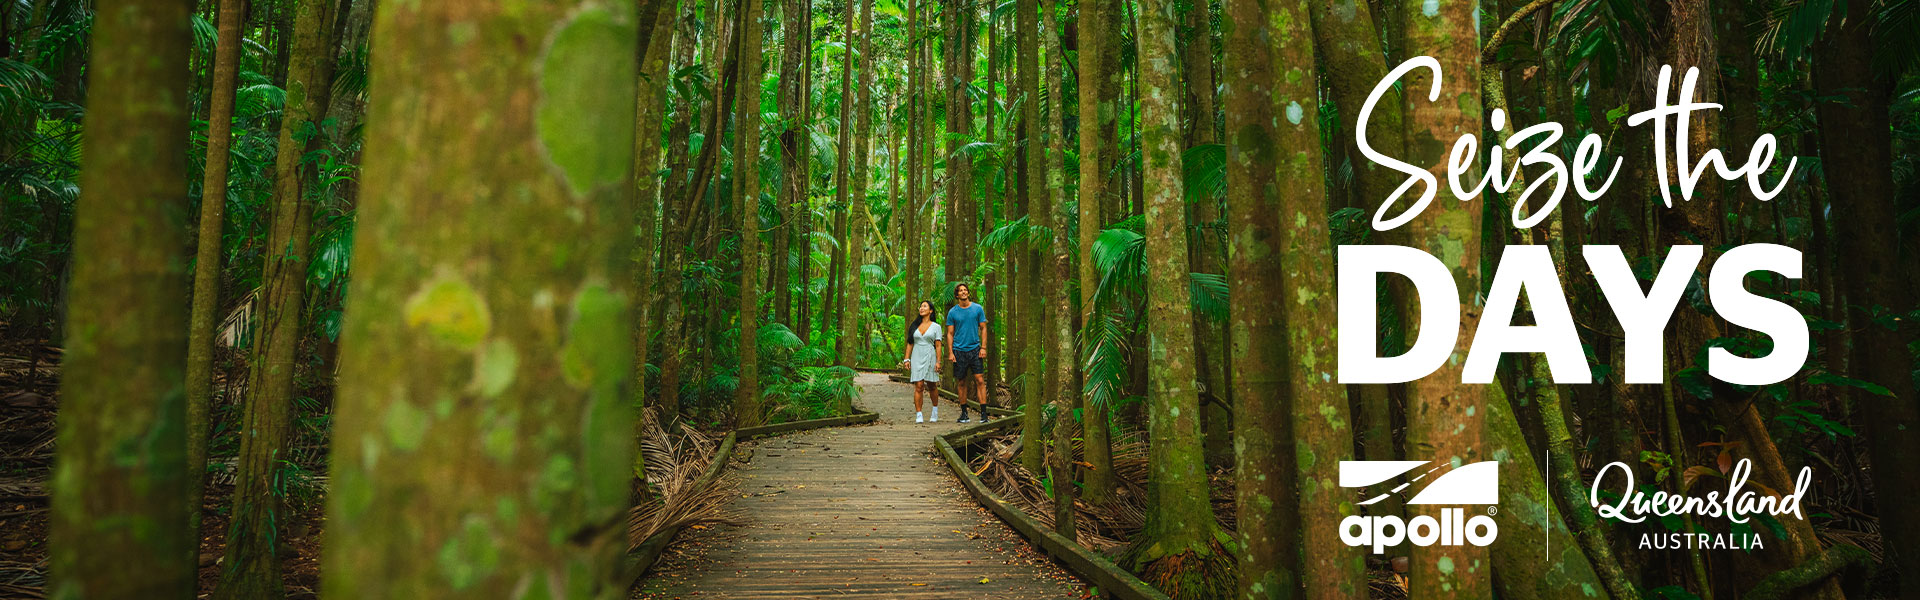 Seize the days - Queensland rainforest